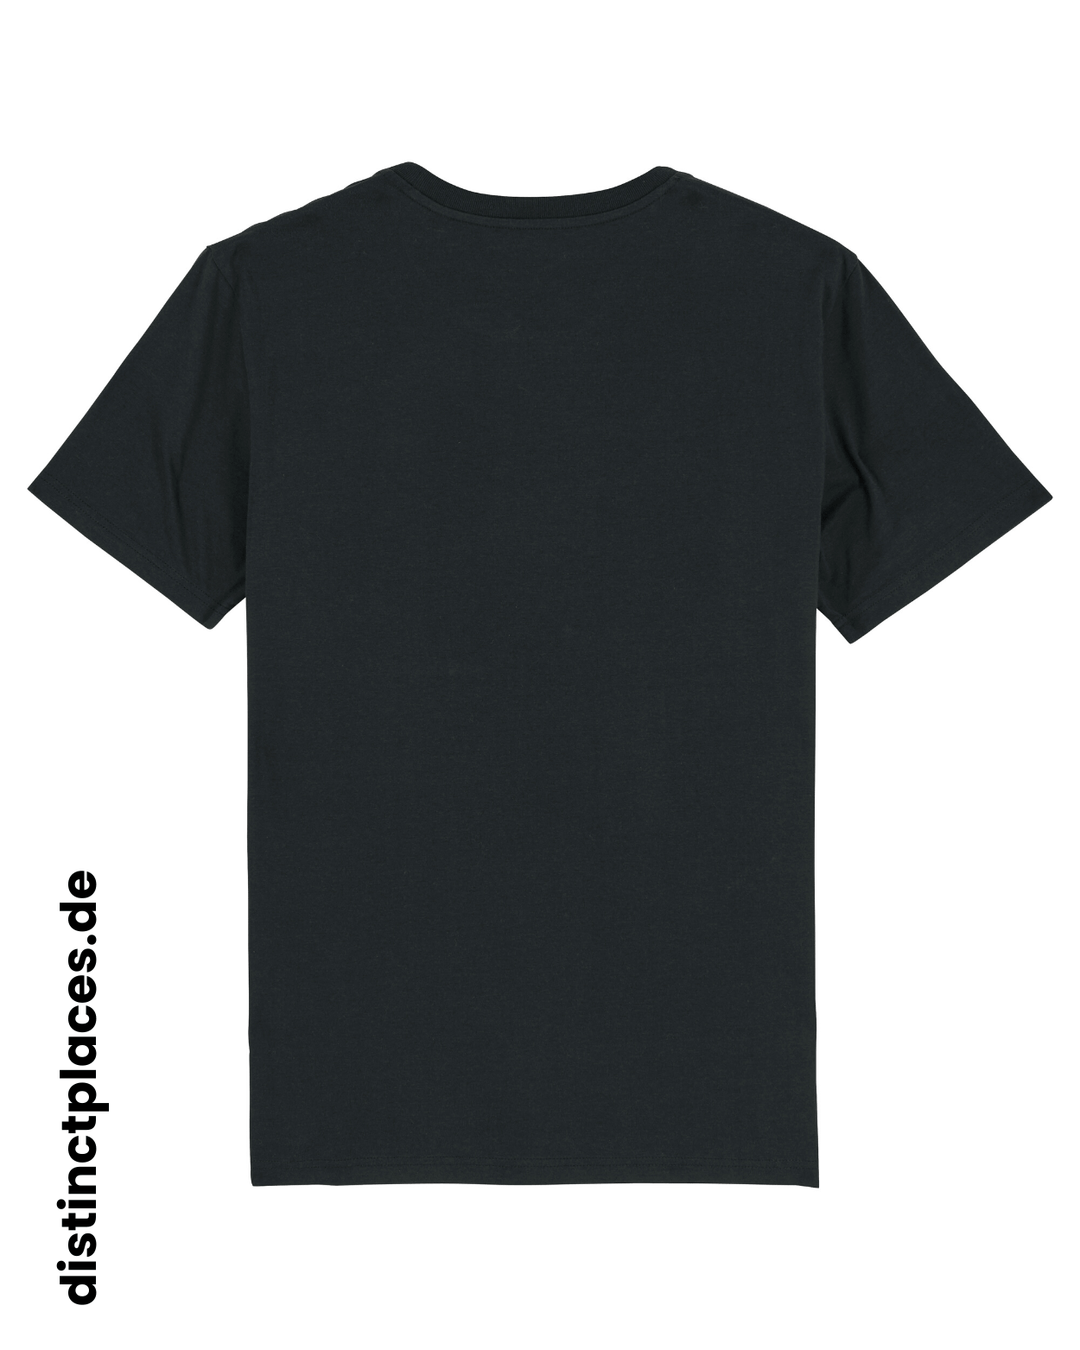 Schwarzes fairtrade, vegan und bio-baumwoll T-Shirt von hinten mit einem minimalistischem weißen Logo, beziehungsweise Schriftzug für Kassel